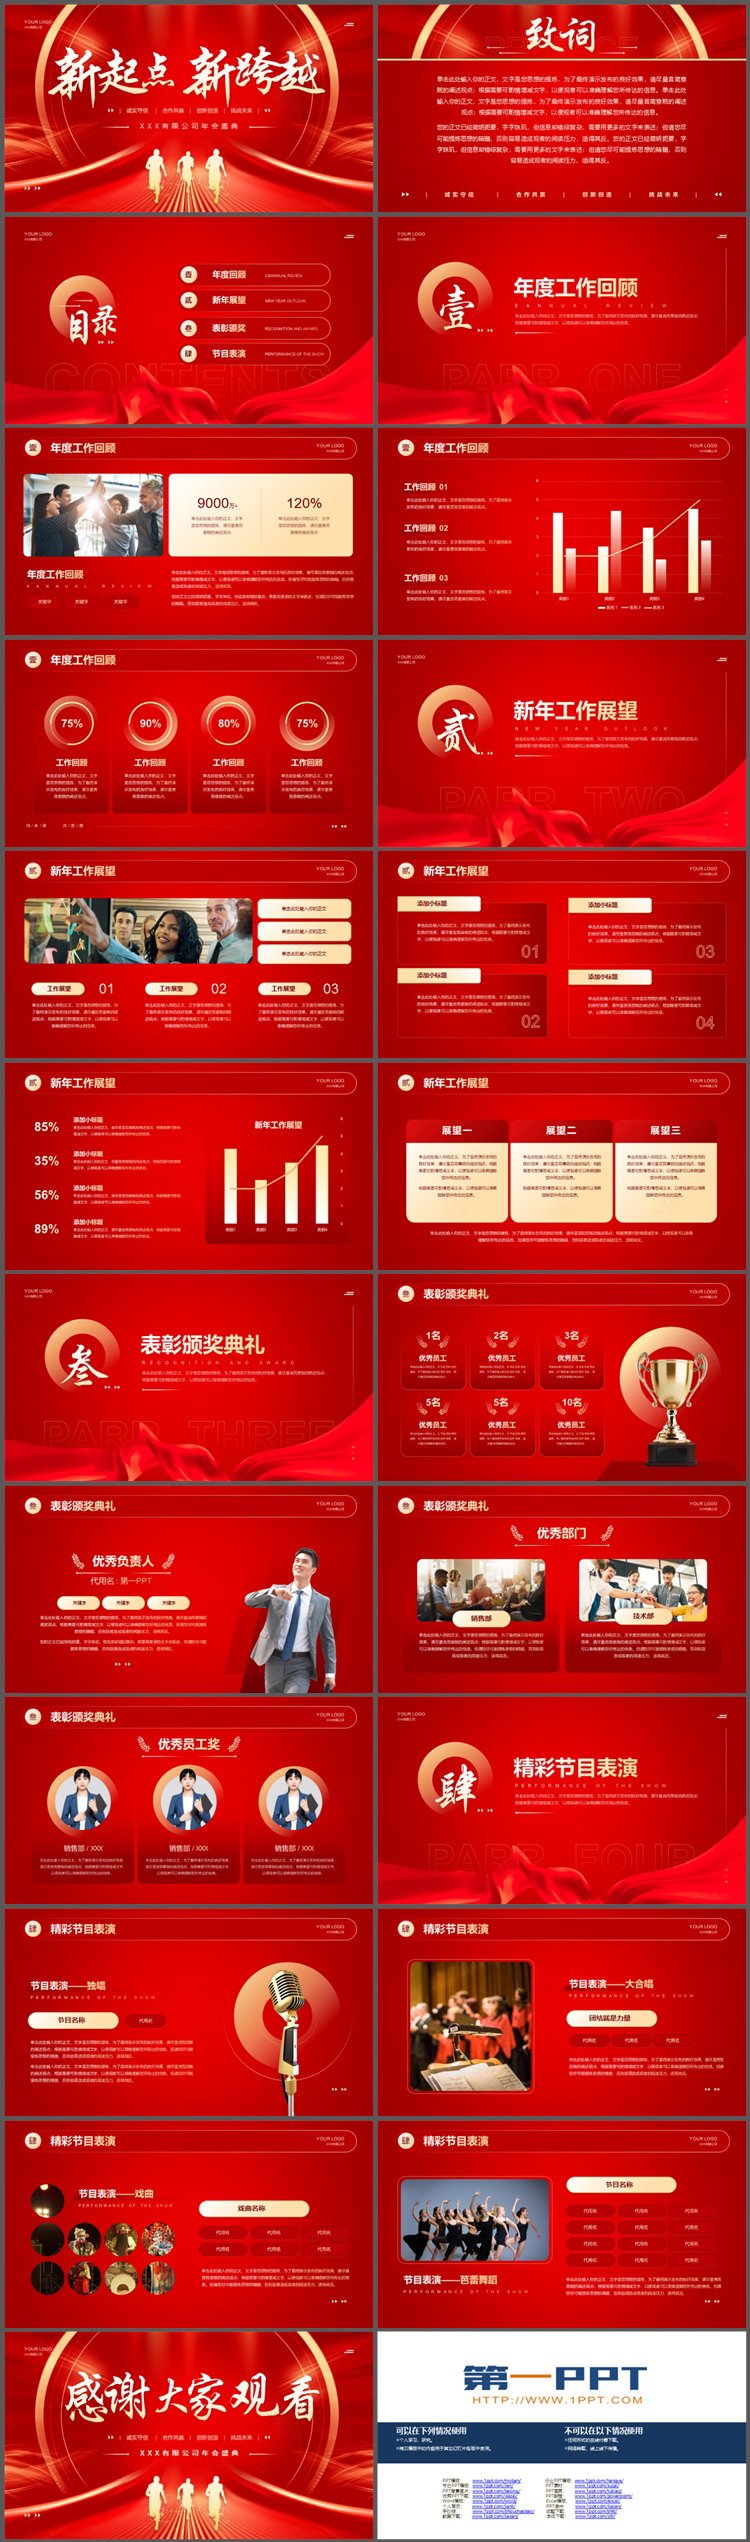 红色喜庆“新起点新跨越”企业年会盛典PPT模板下载